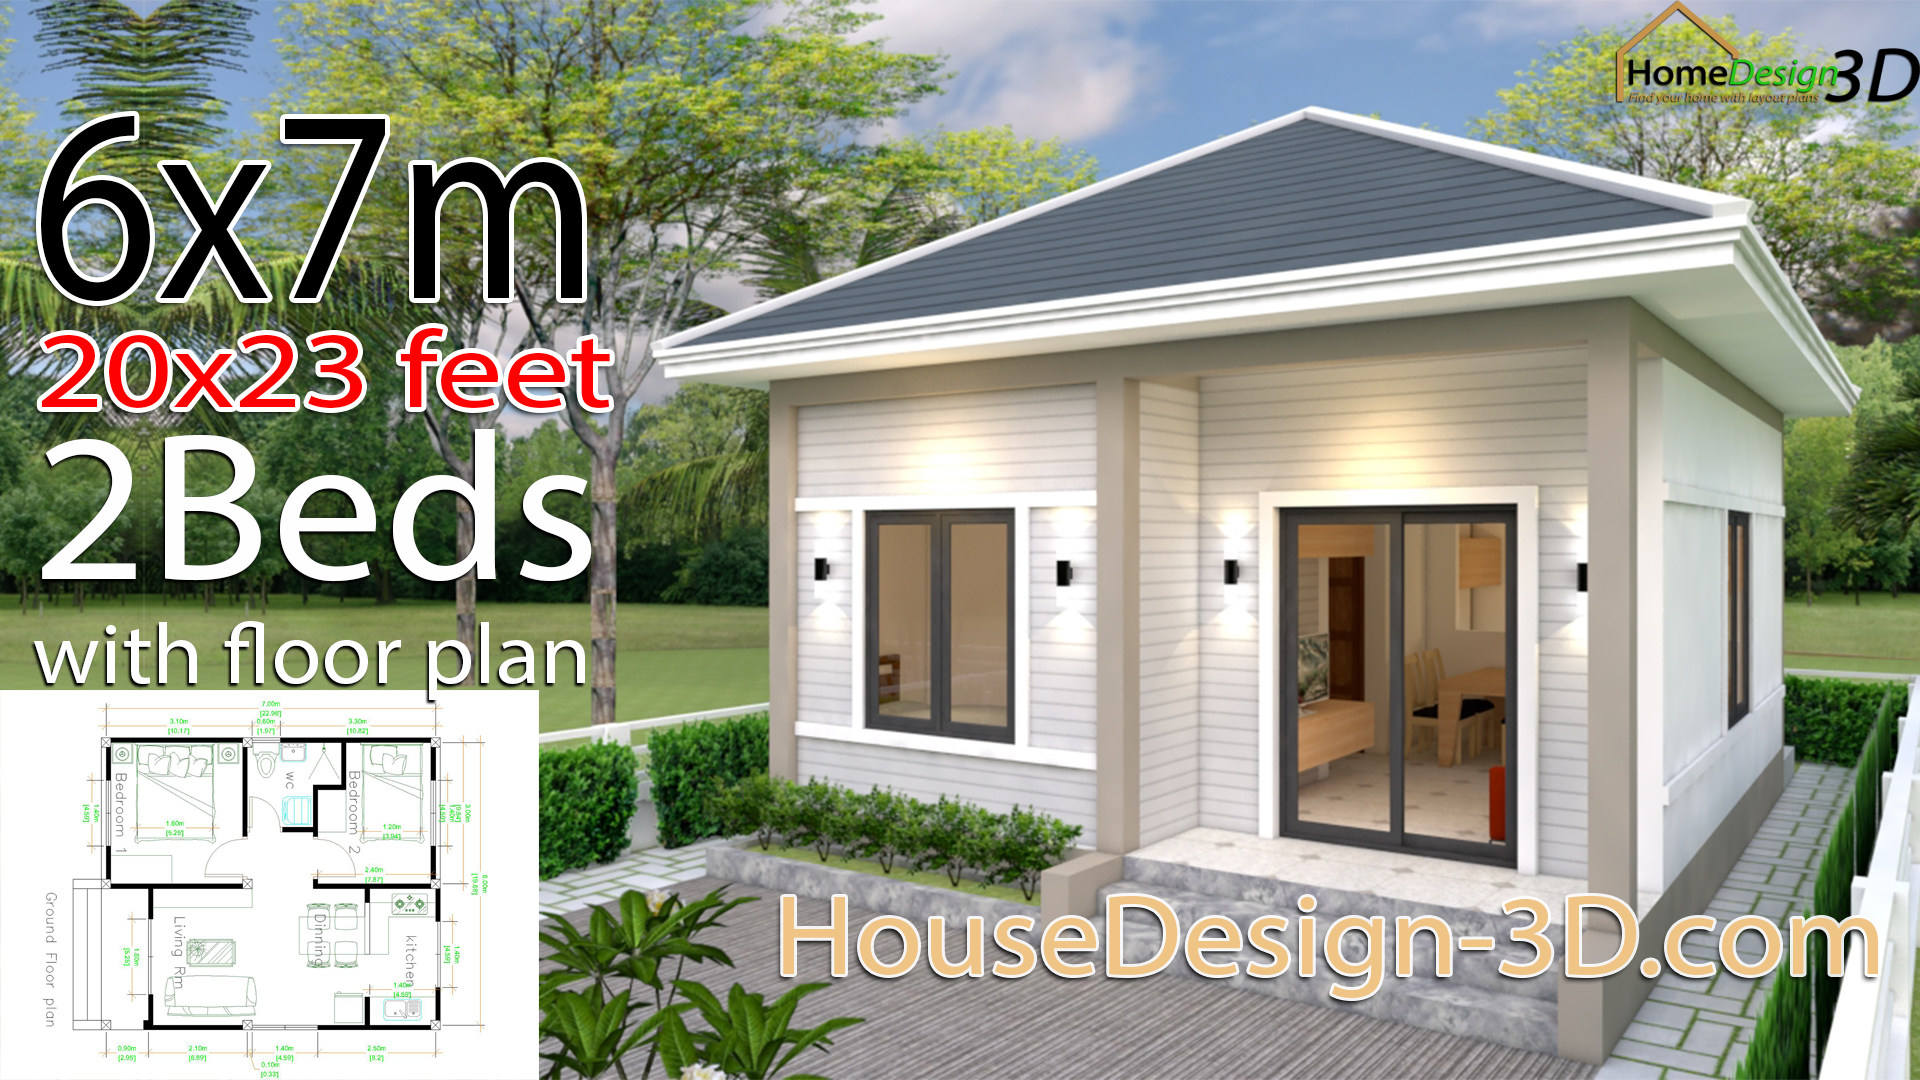 House Design 3d 6x7 Meter 20x23 Feet 2 Bedrooms Hip Roof